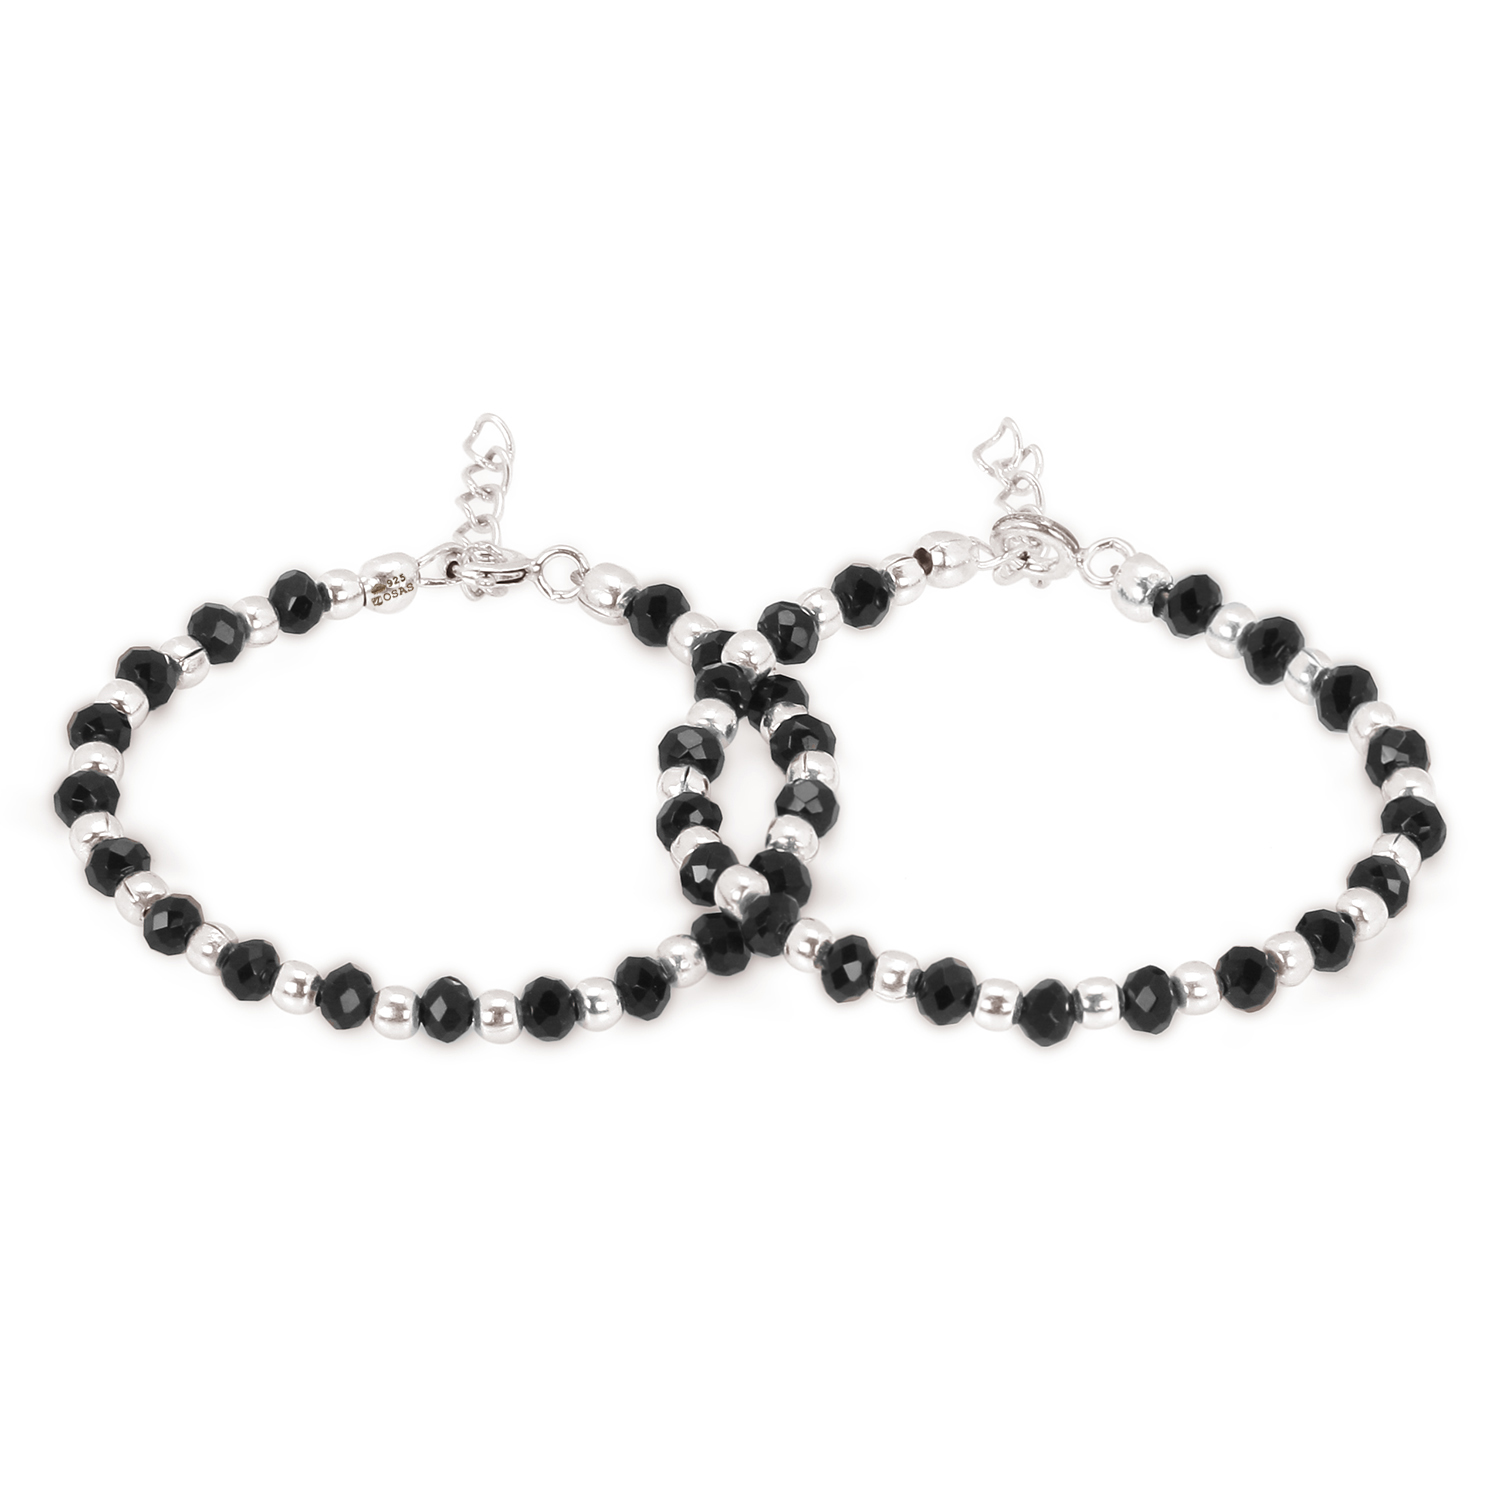 Share 80+ small black bead bracelet best - ceg.edu.vn